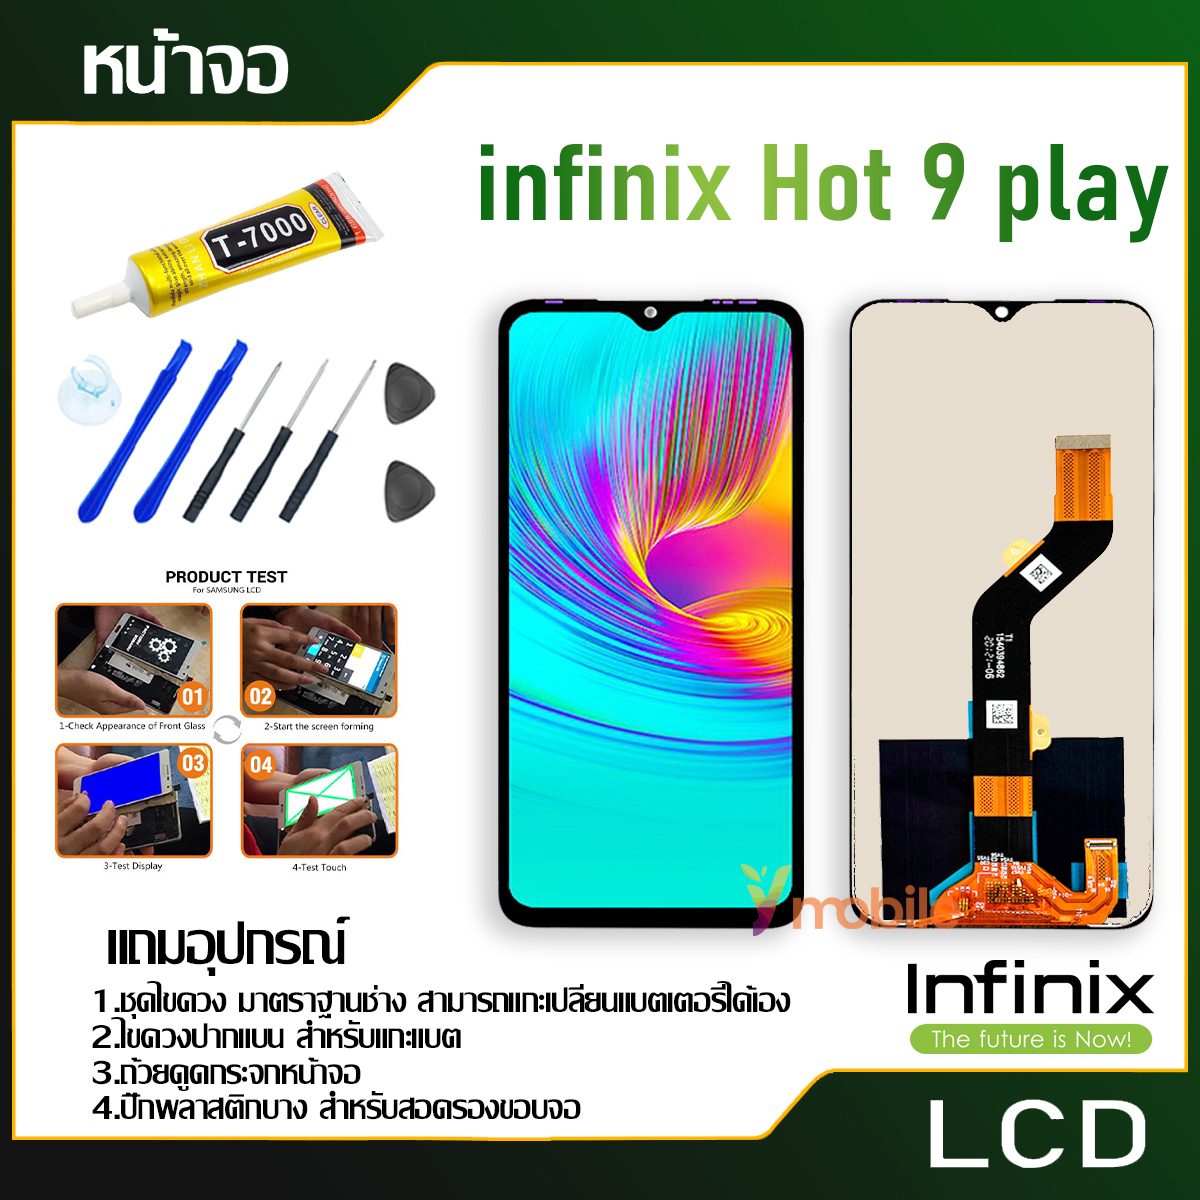 จอชุด Infinix Hot 9 play งานแท้ อะไหล่มือถือ หน้าจอ infinix Hot 9 play/X680/X680B อะไหล่ หน้าจอ LCD จอพร้อมทัชสกรีน อินฟินิกซ์ Hot9 play/Hot9play กาว T7000 แถมไขควง